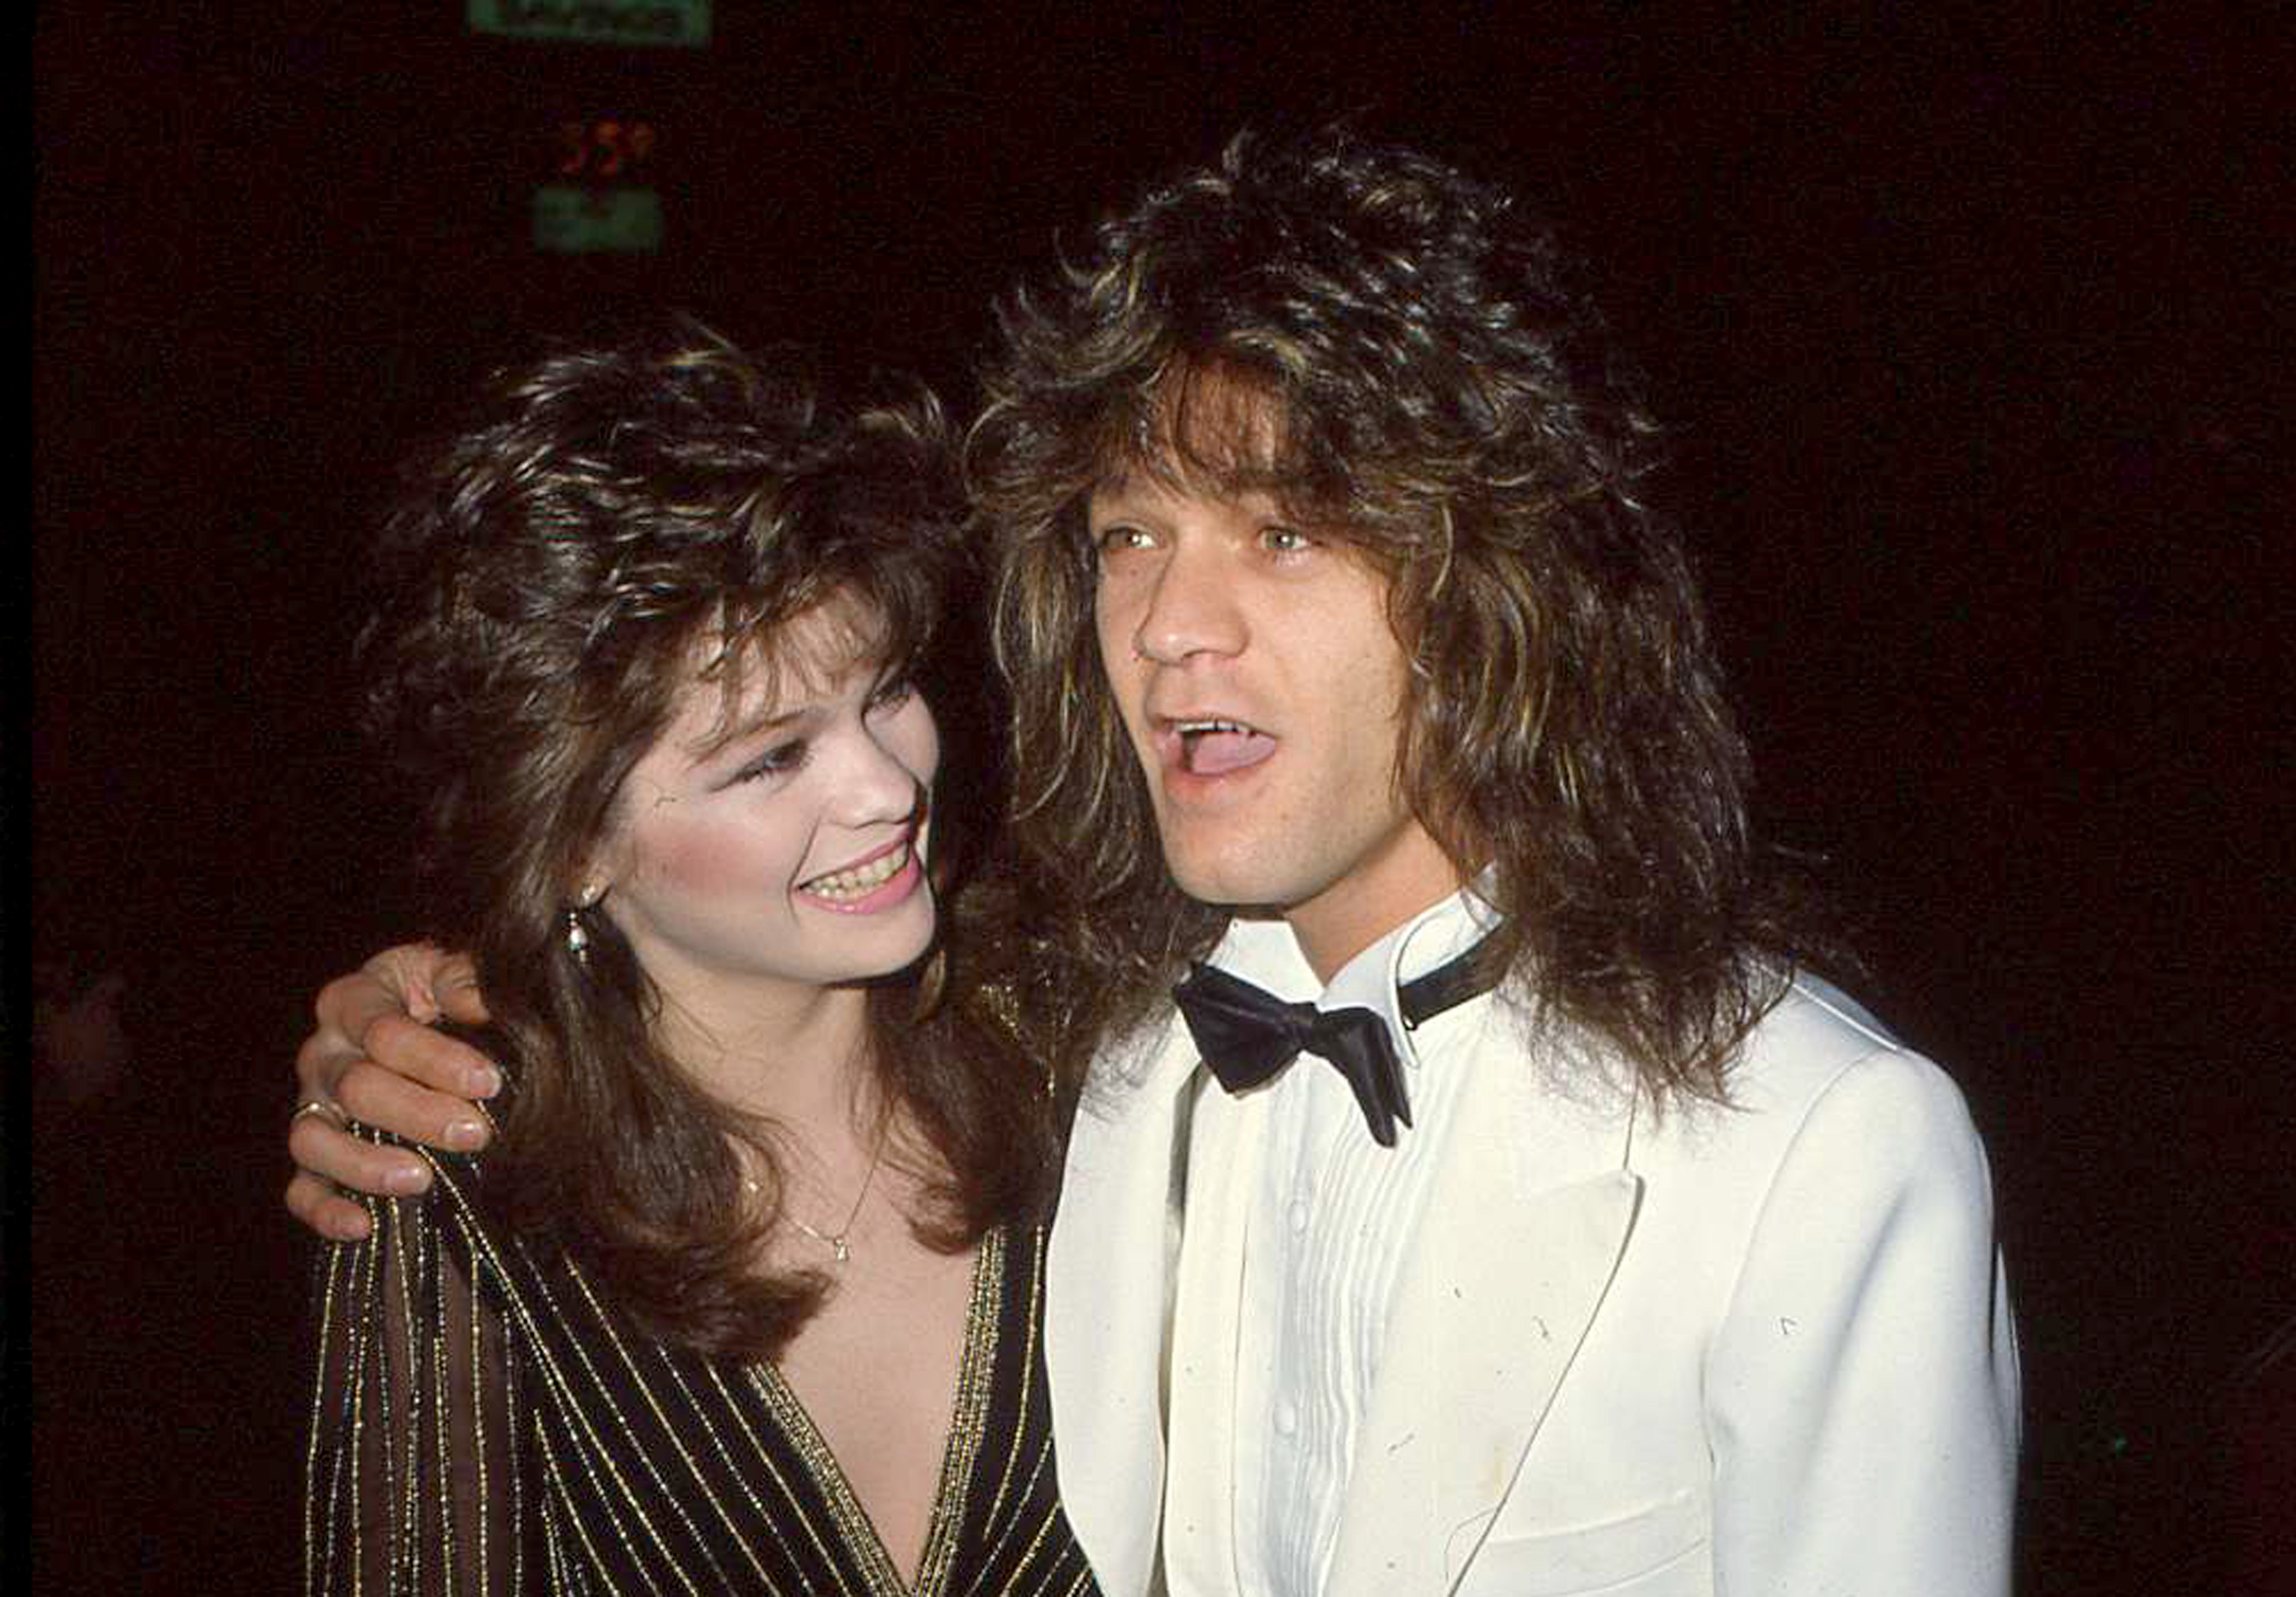 Valerie Bertinelli and Eddie Van Halen in a 1983 photograph.